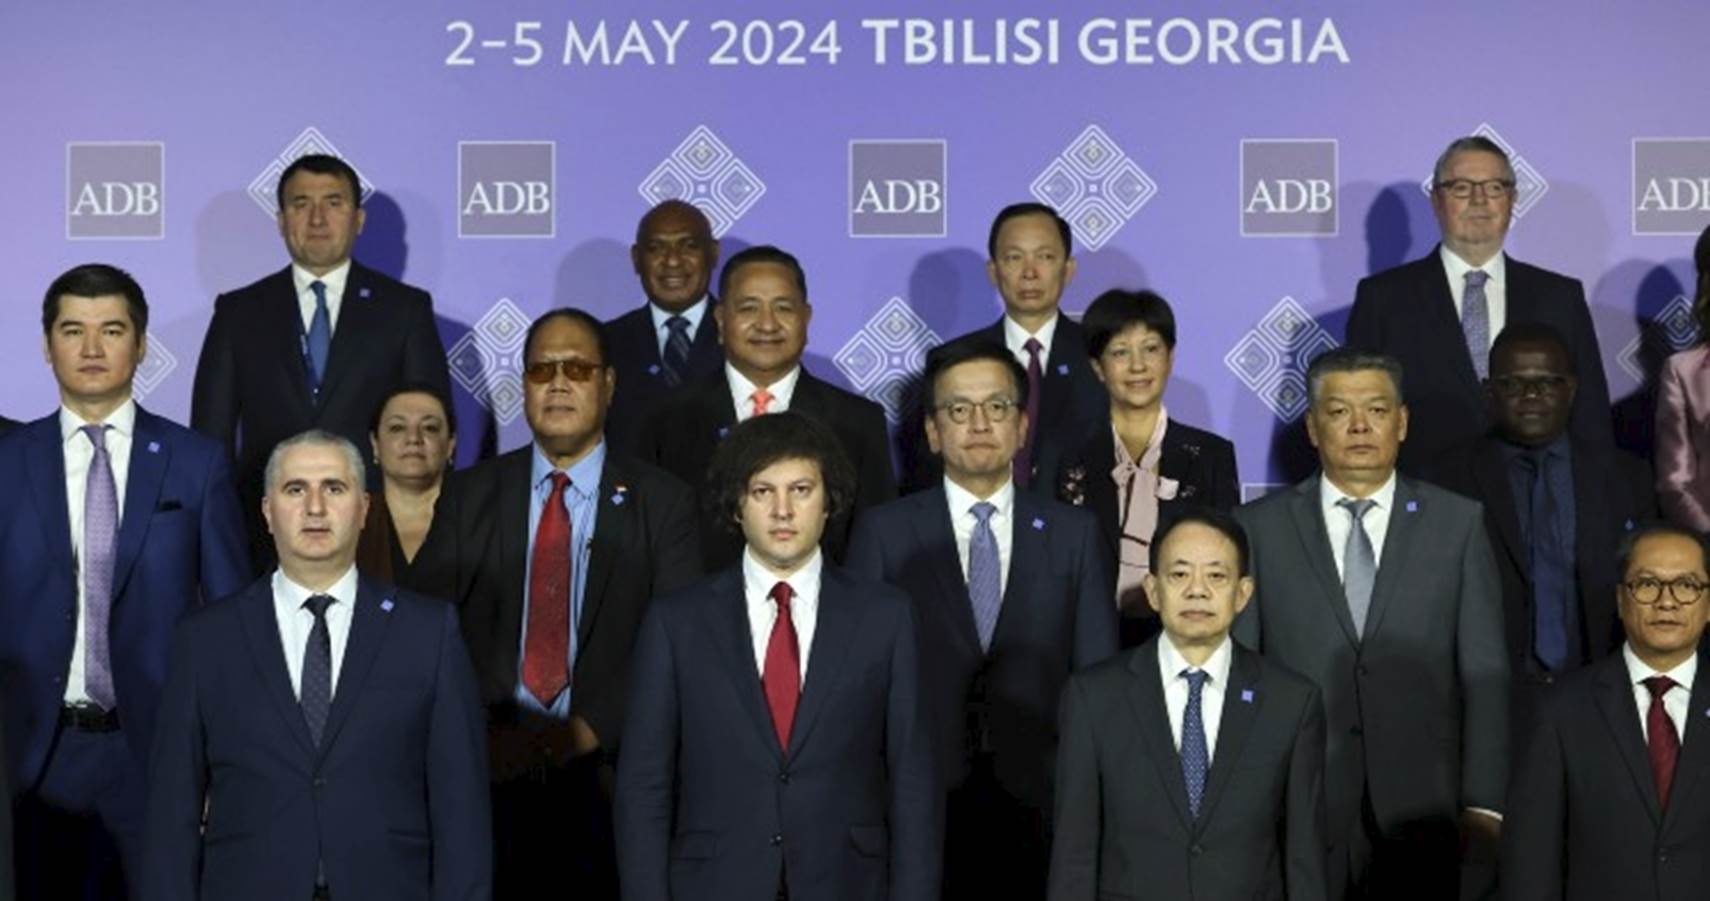 Phó Thống đốc Đào Minh Tú chụp ảnh lưu niệm cùng Thủ tướng Georgia,Chủ tịch ADB và các nước thành viên